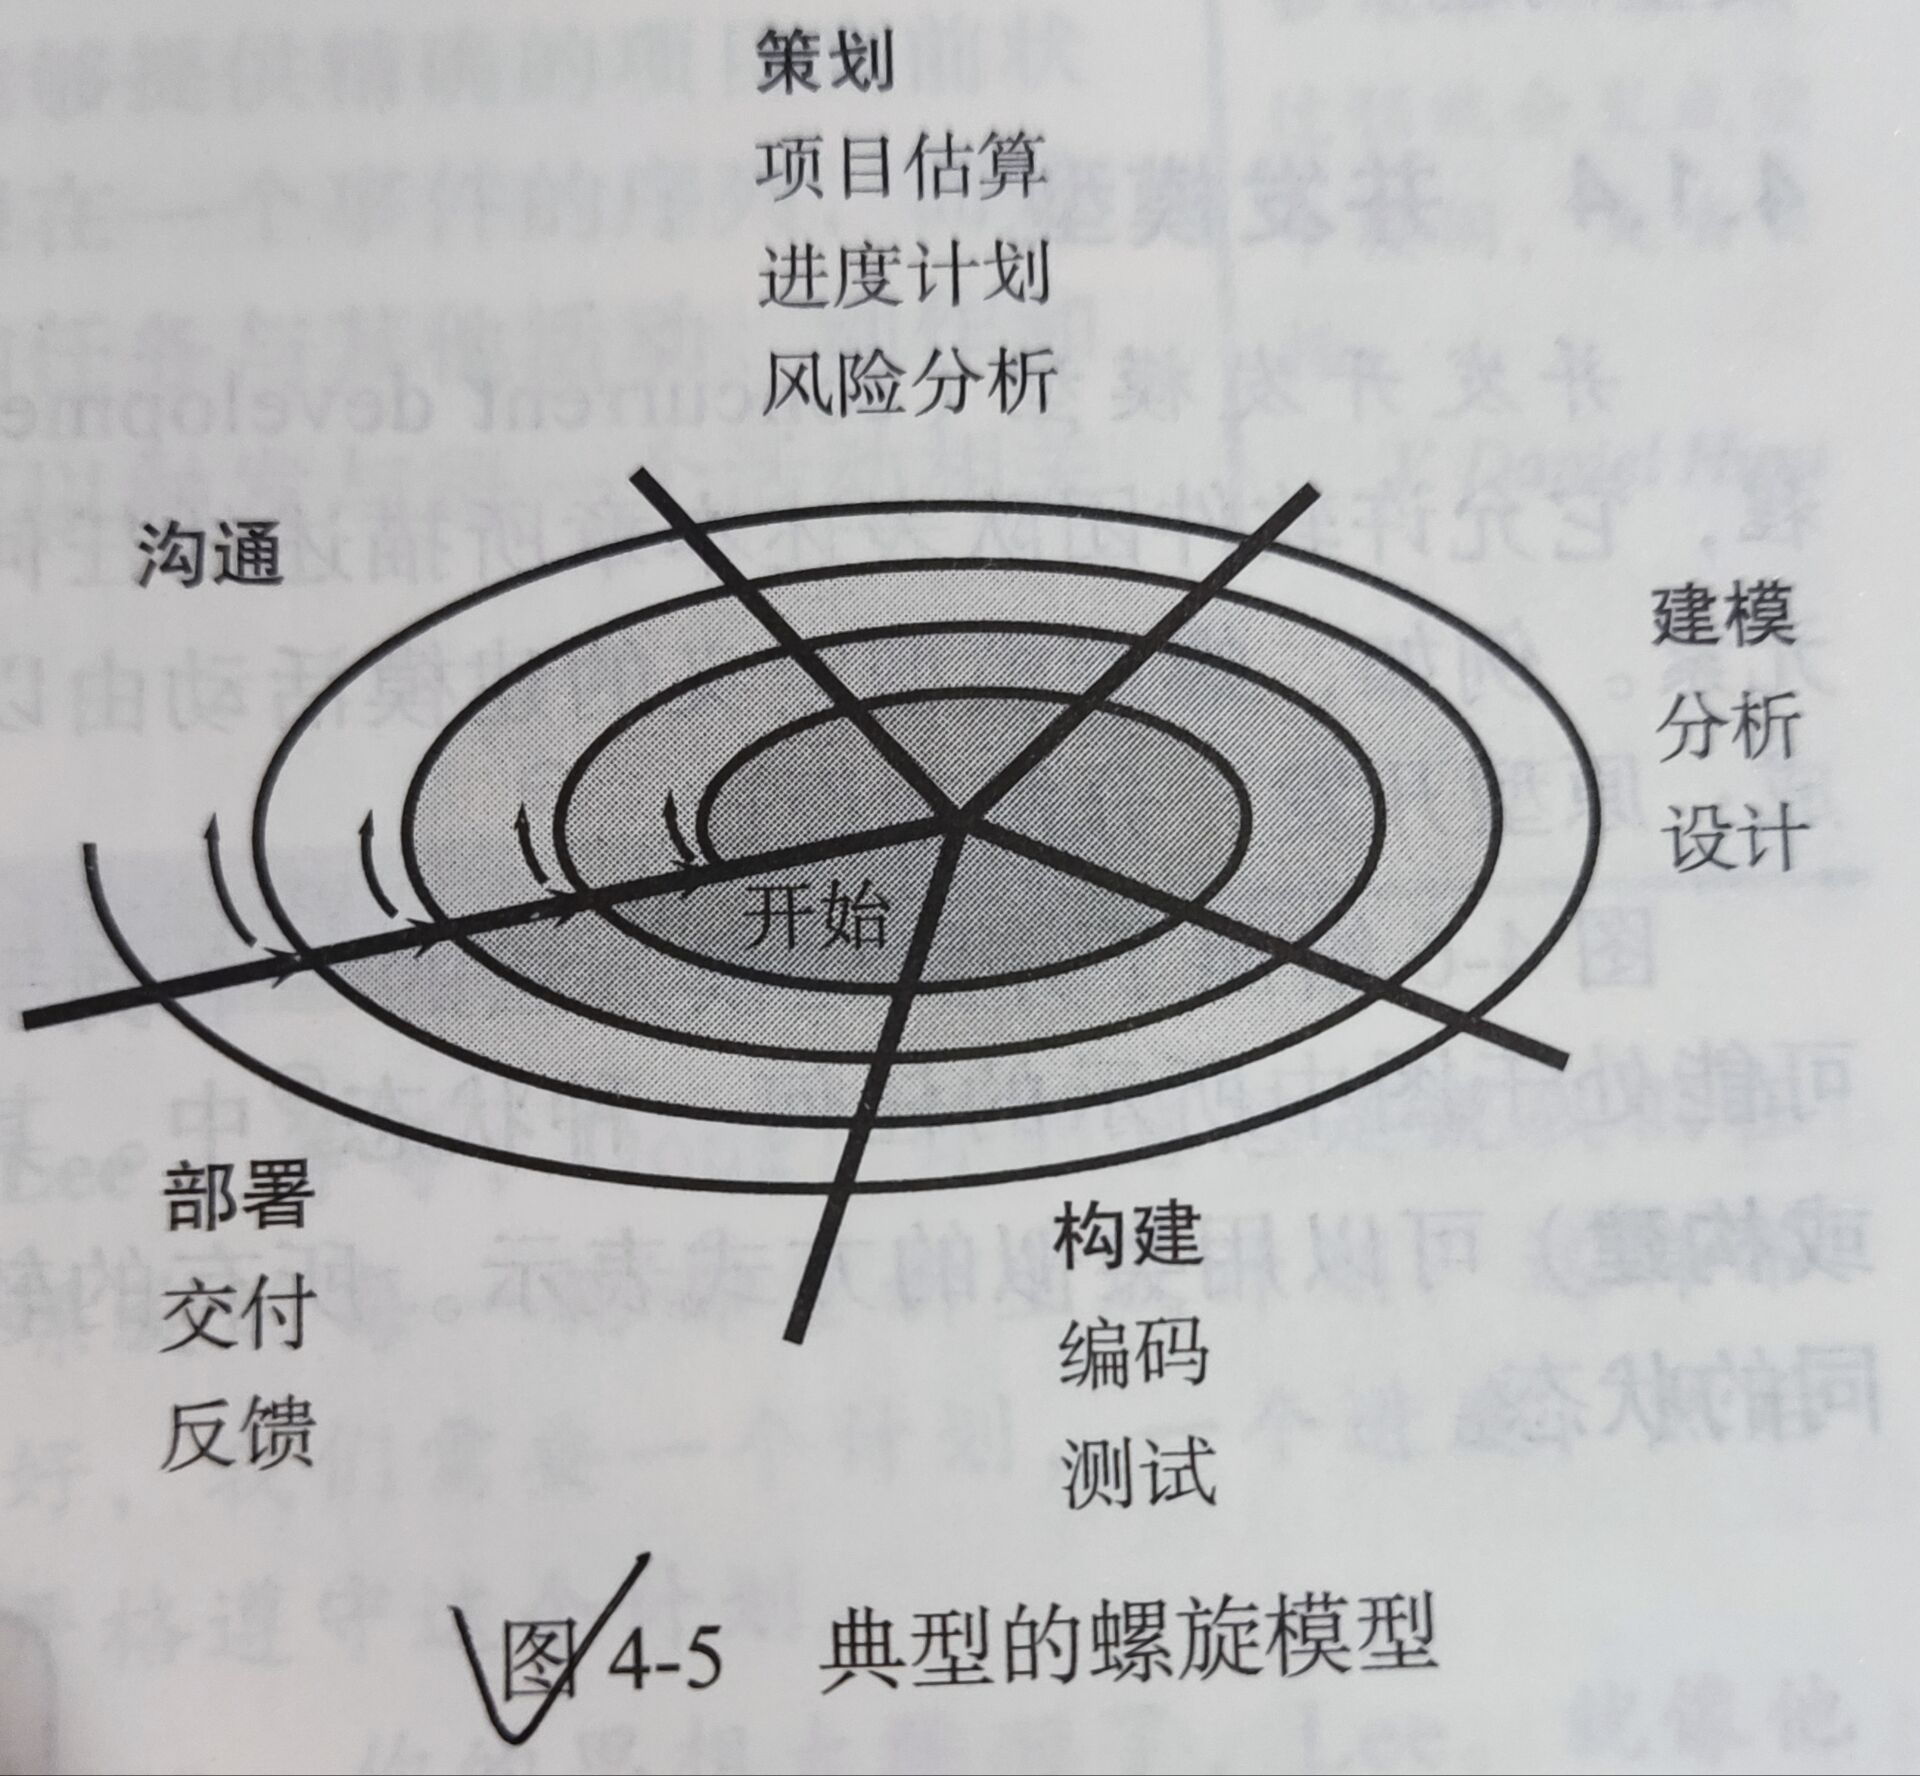 6螺旋模型(the spiral model)